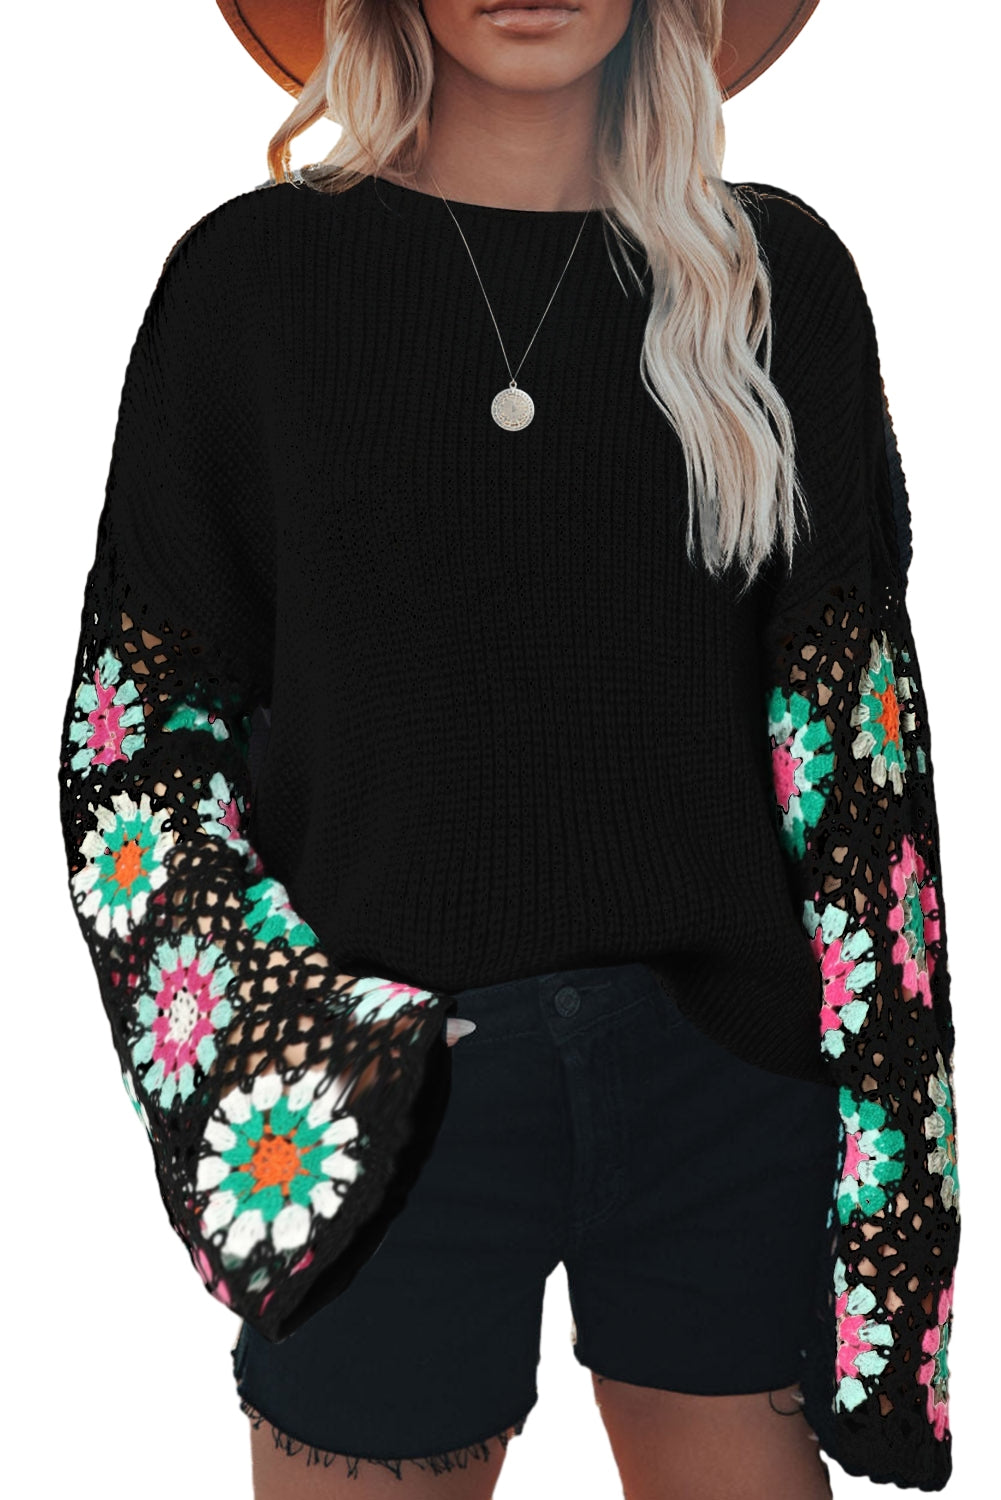 Schwarzer lockerer Pullover mit gehäkelten Glockenärmeln und Blumenmuster